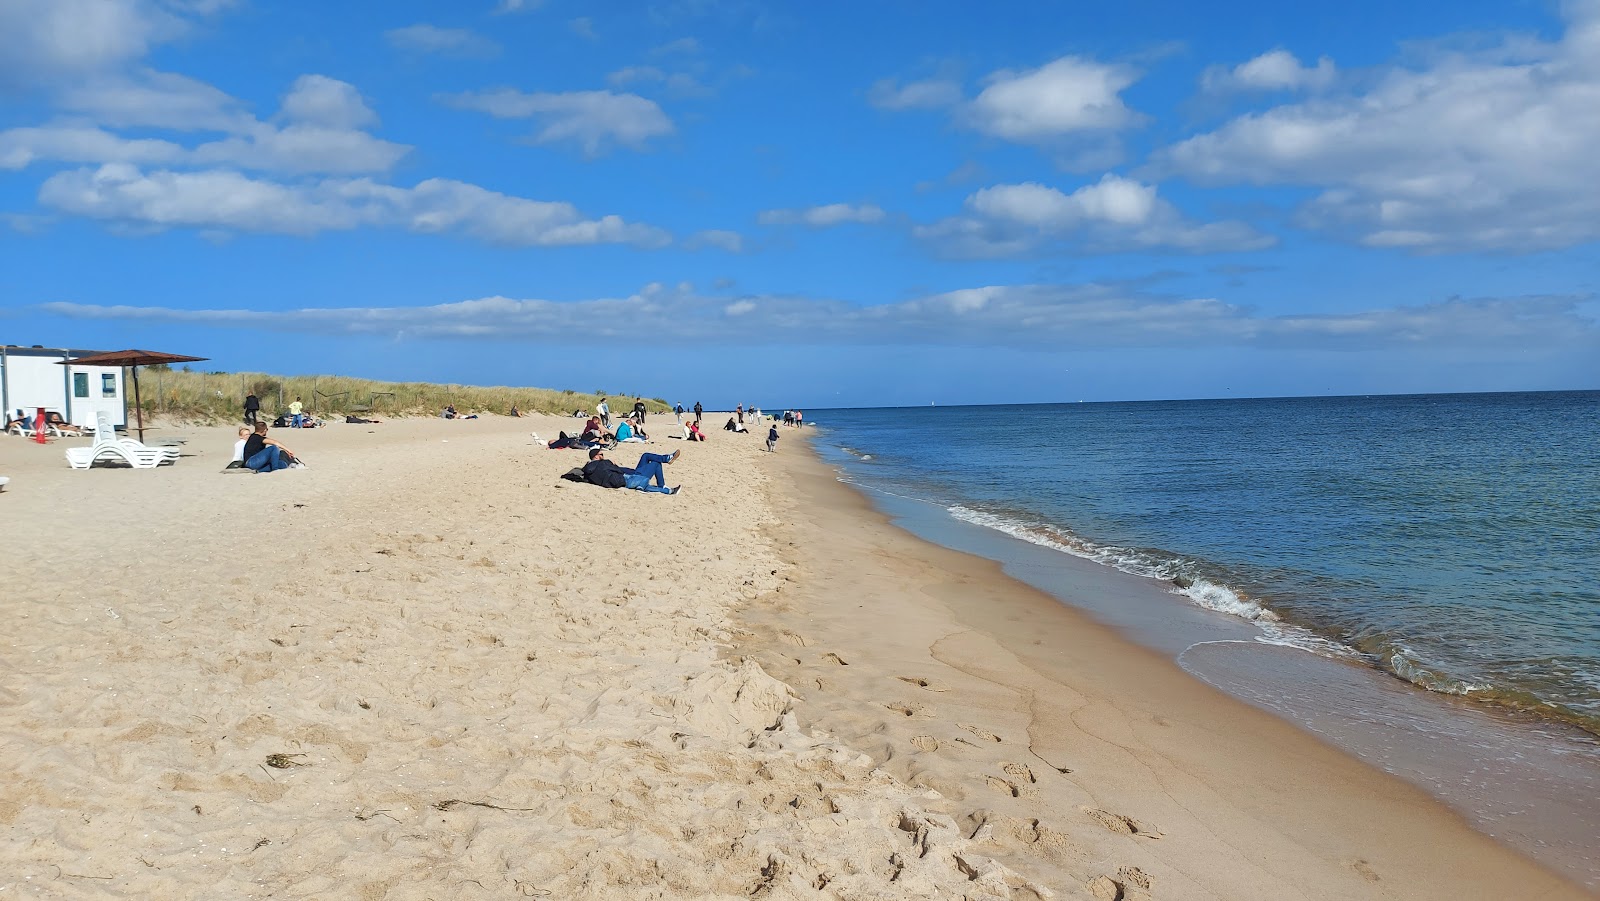 Ceple Helski beach'in fotoğrafı geniş plaj ile birlikte